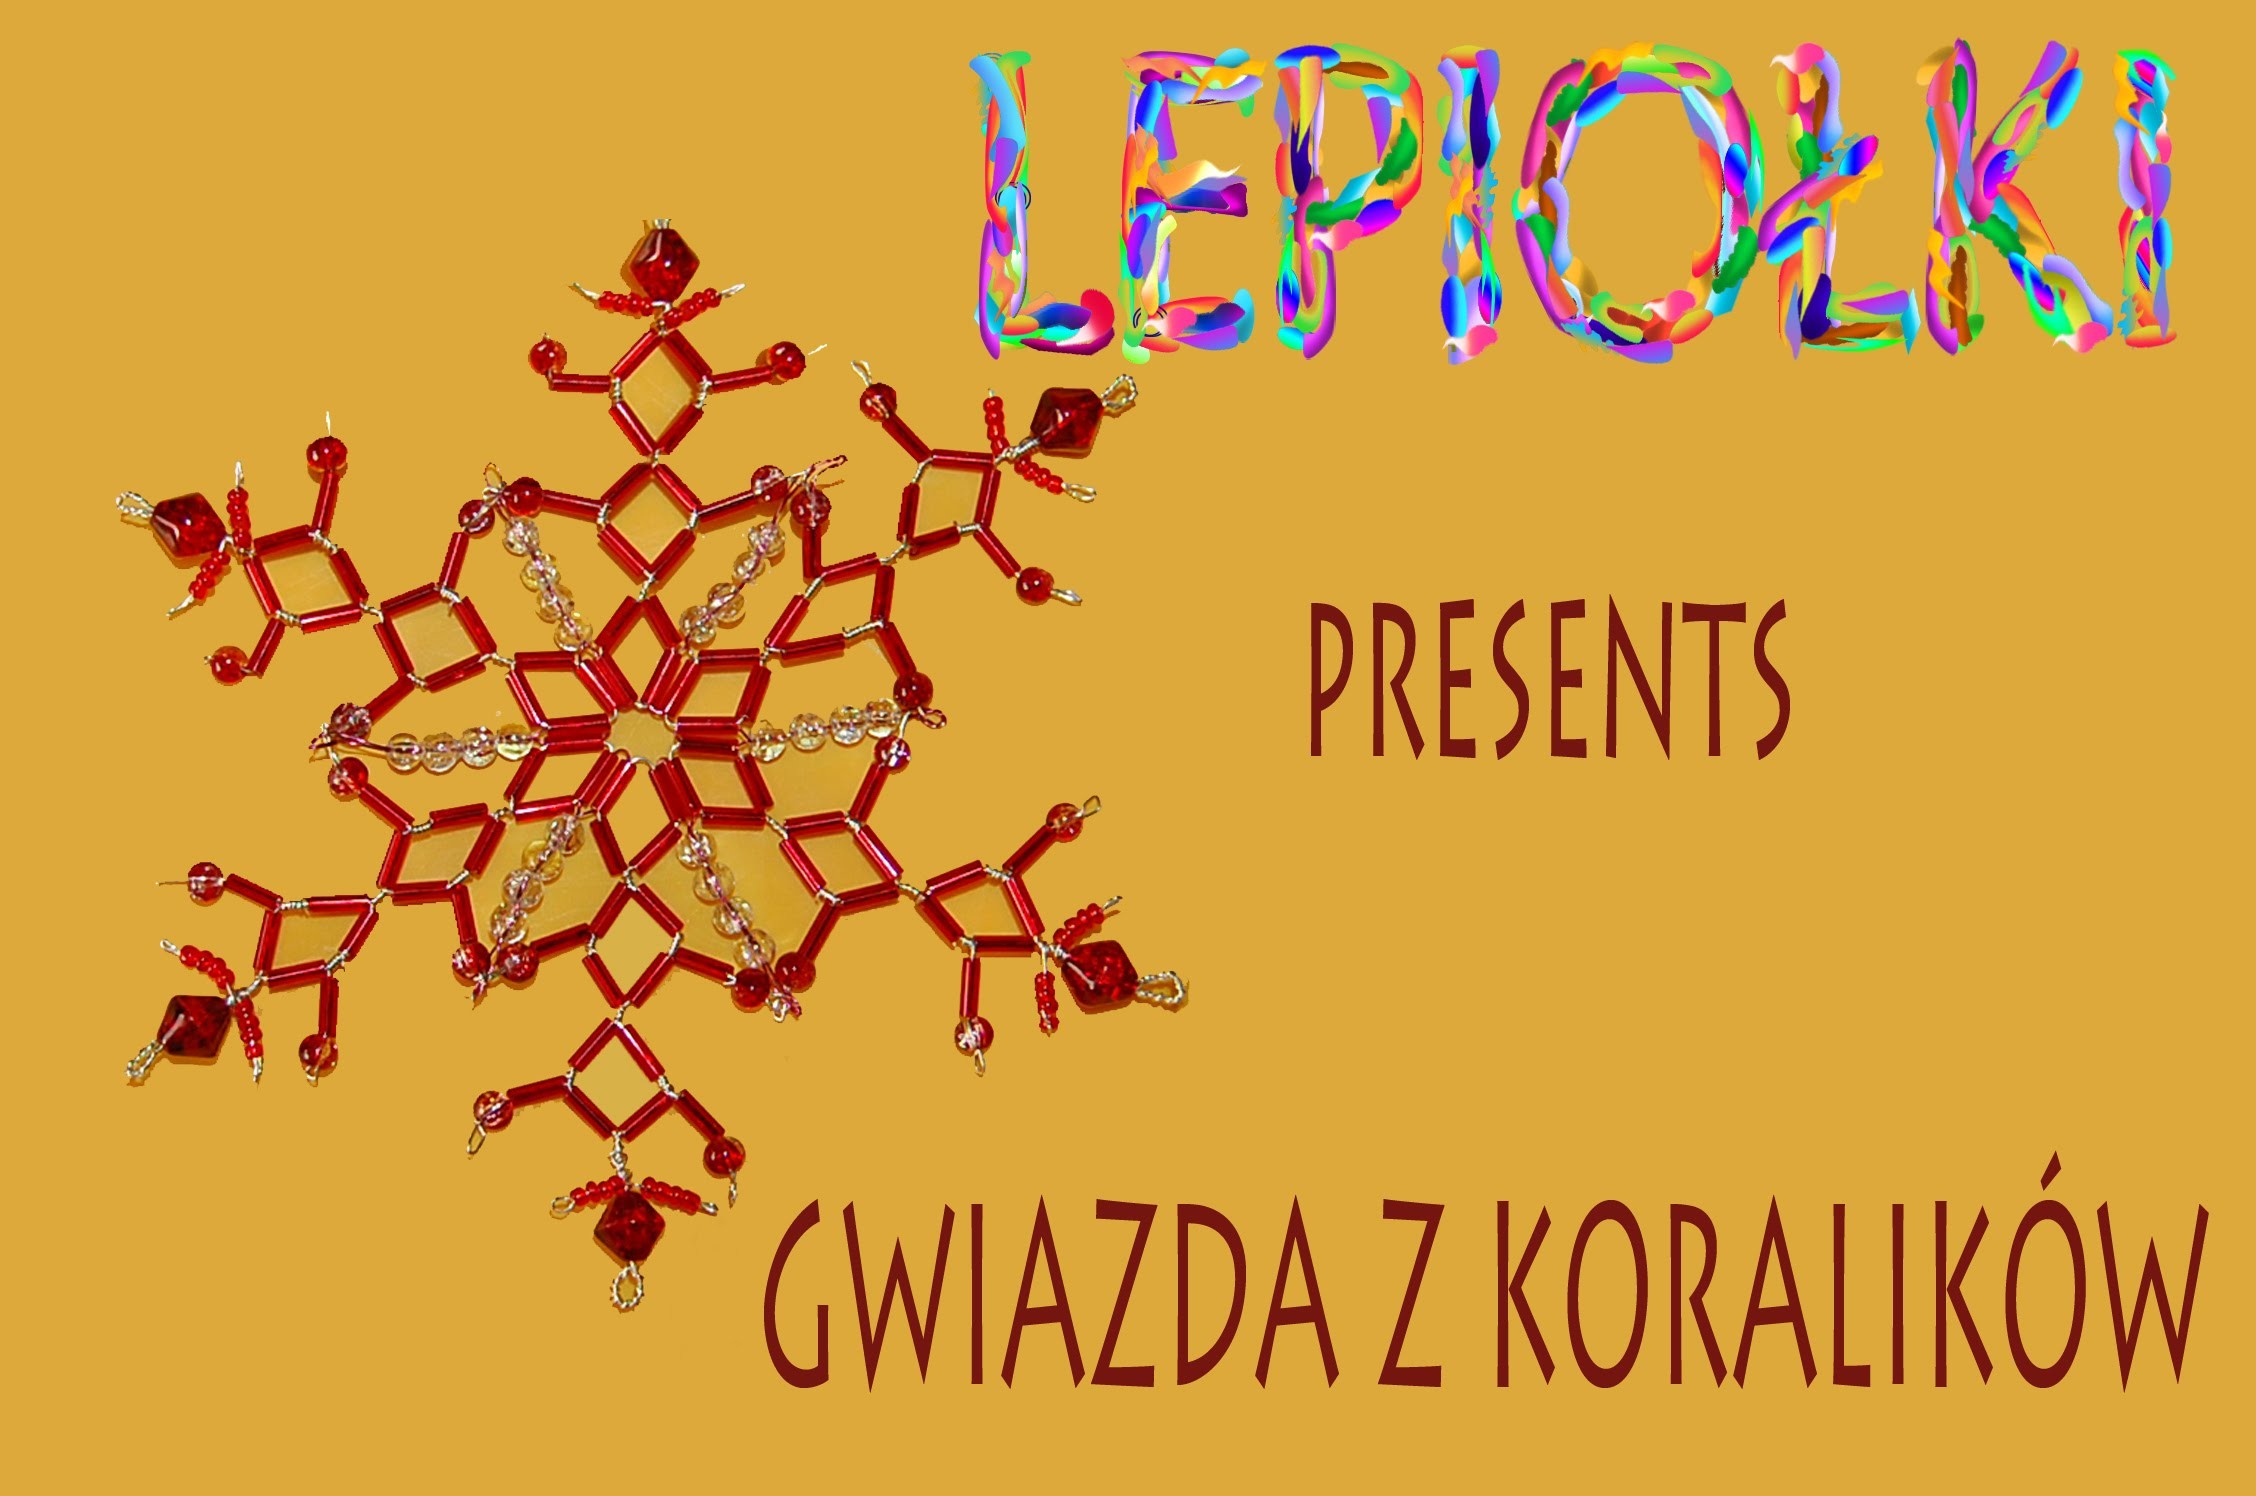 Na święta: Gwiazda z koralików TUTORIAL Star with beads  For Christmas Christmas star, Lepiołki,